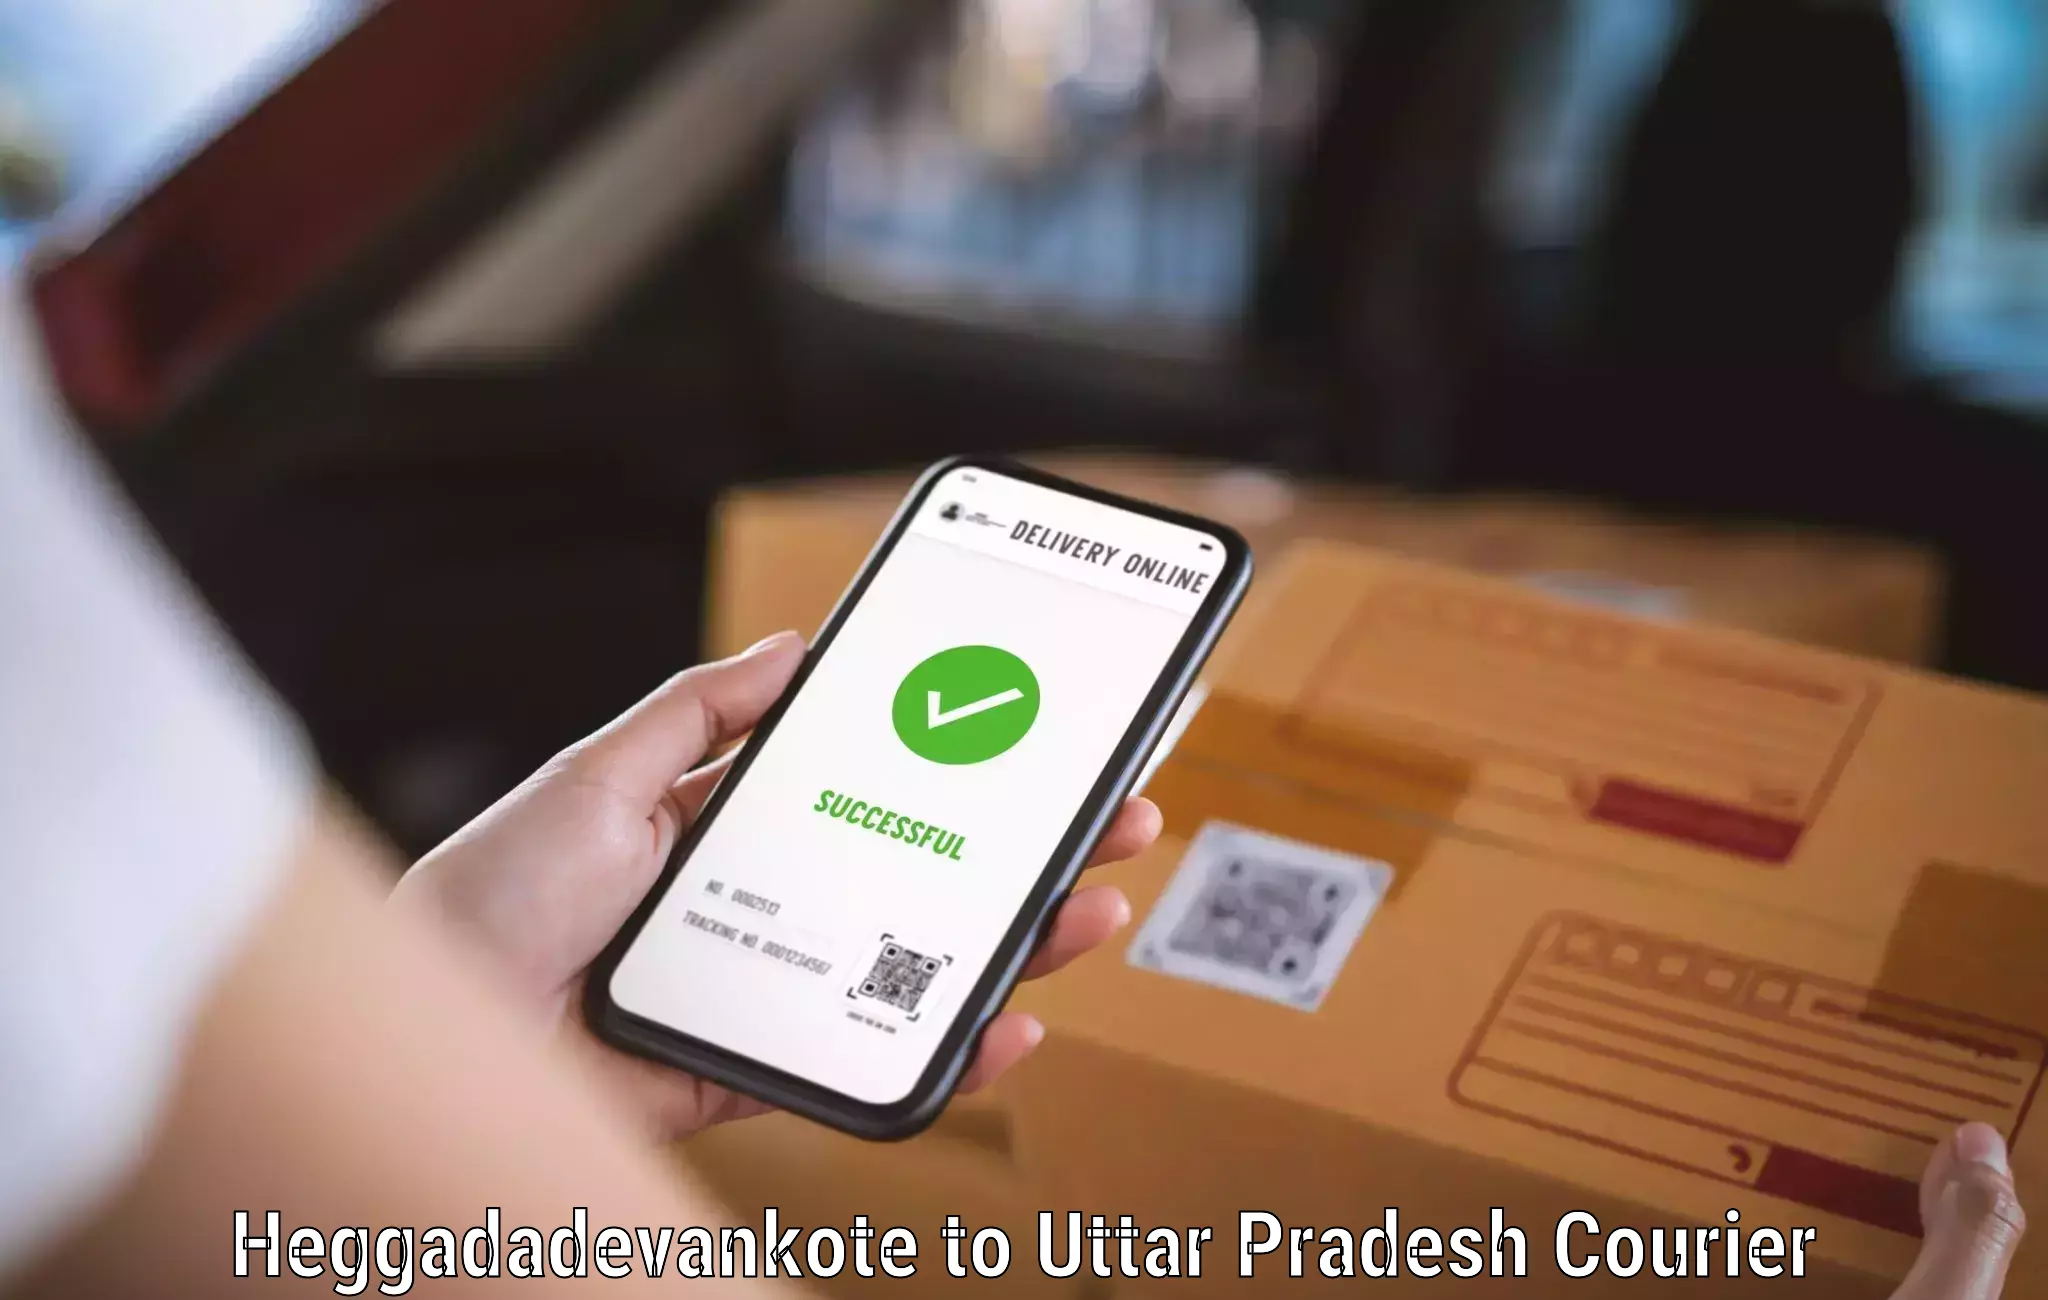 Versatile courier offerings in Heggadadevankote to IIT Varanasi